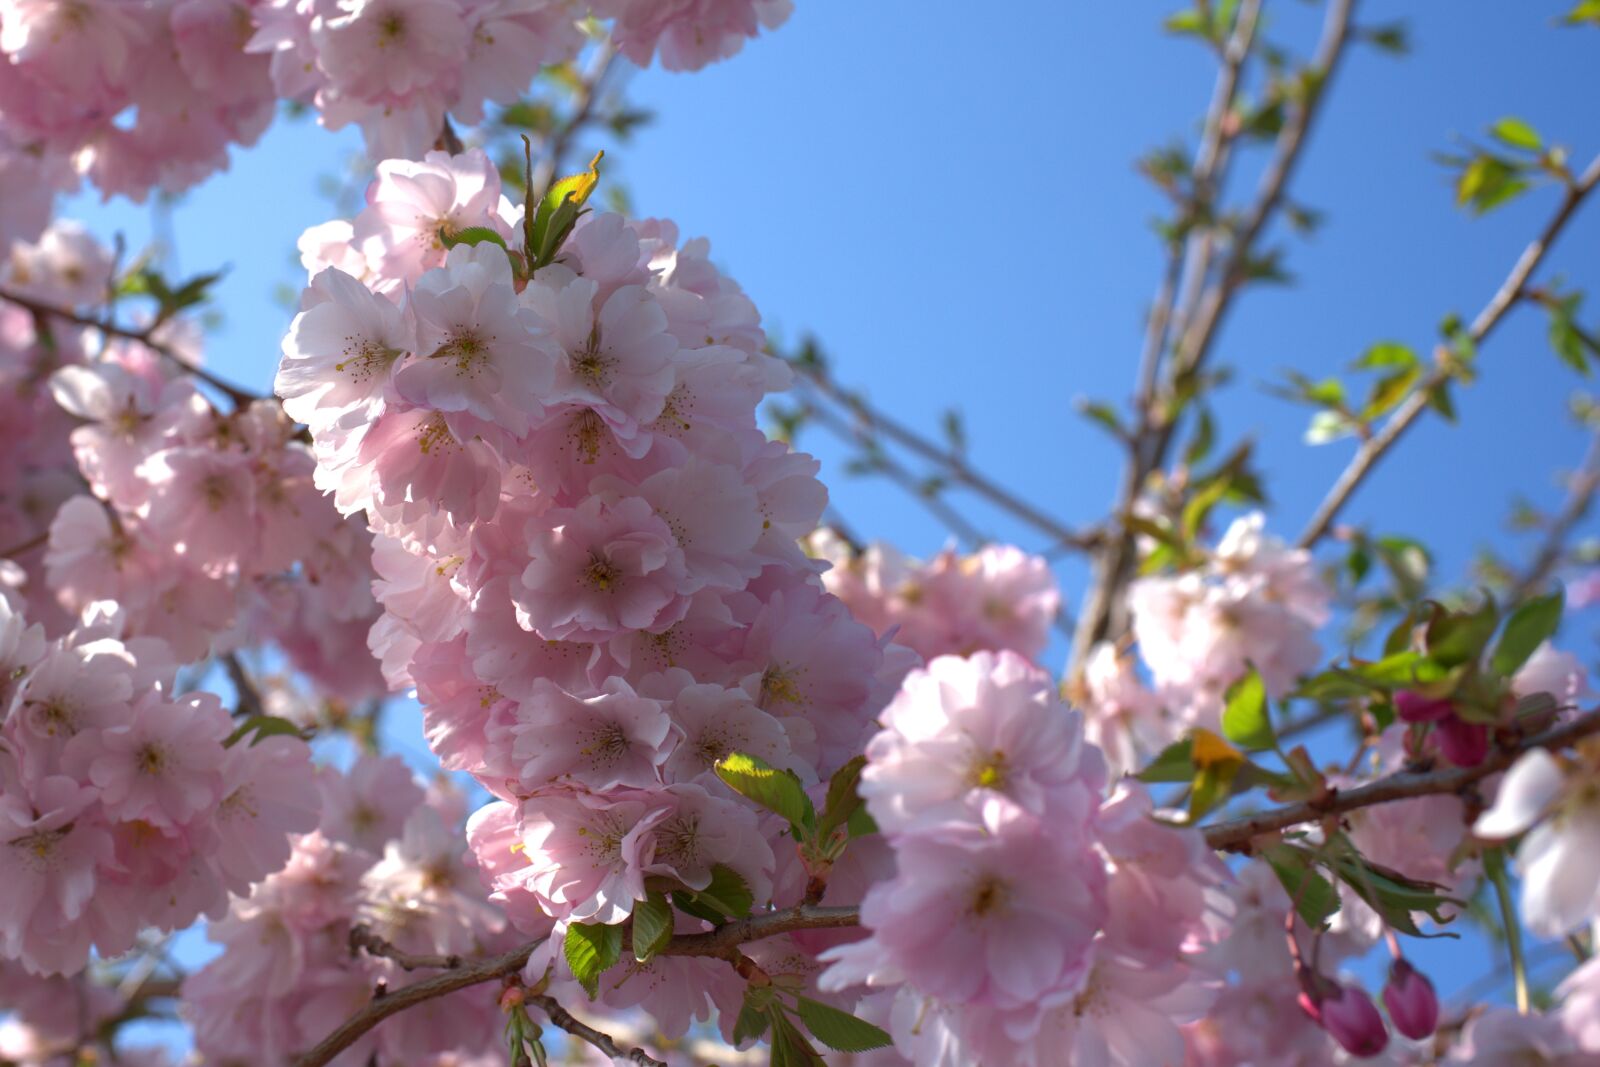 Sony a7 II + Sony FE 50mm F2.8 Macro sample photo. Cherry tree, cherry blossom photography